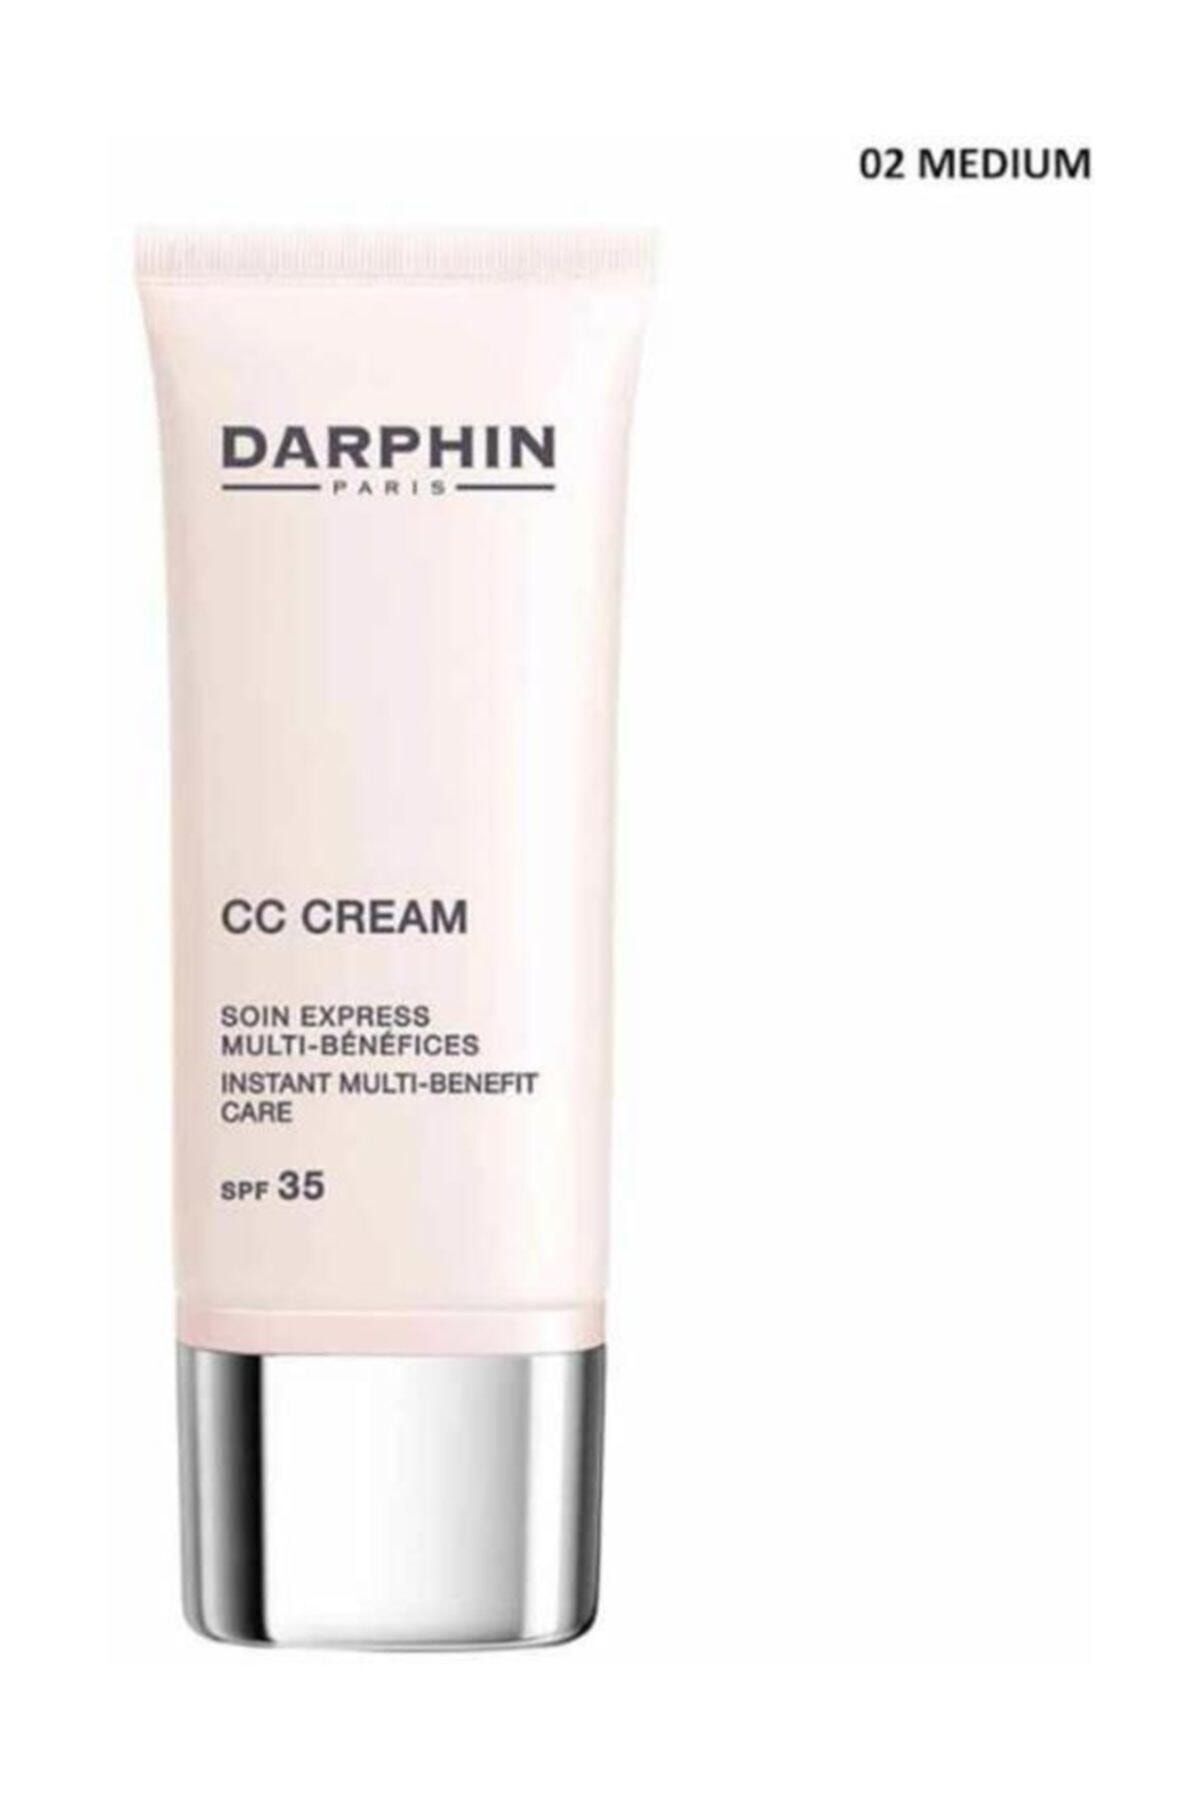 Darphin Cc Cream 02 Medium Spf35 30 ml